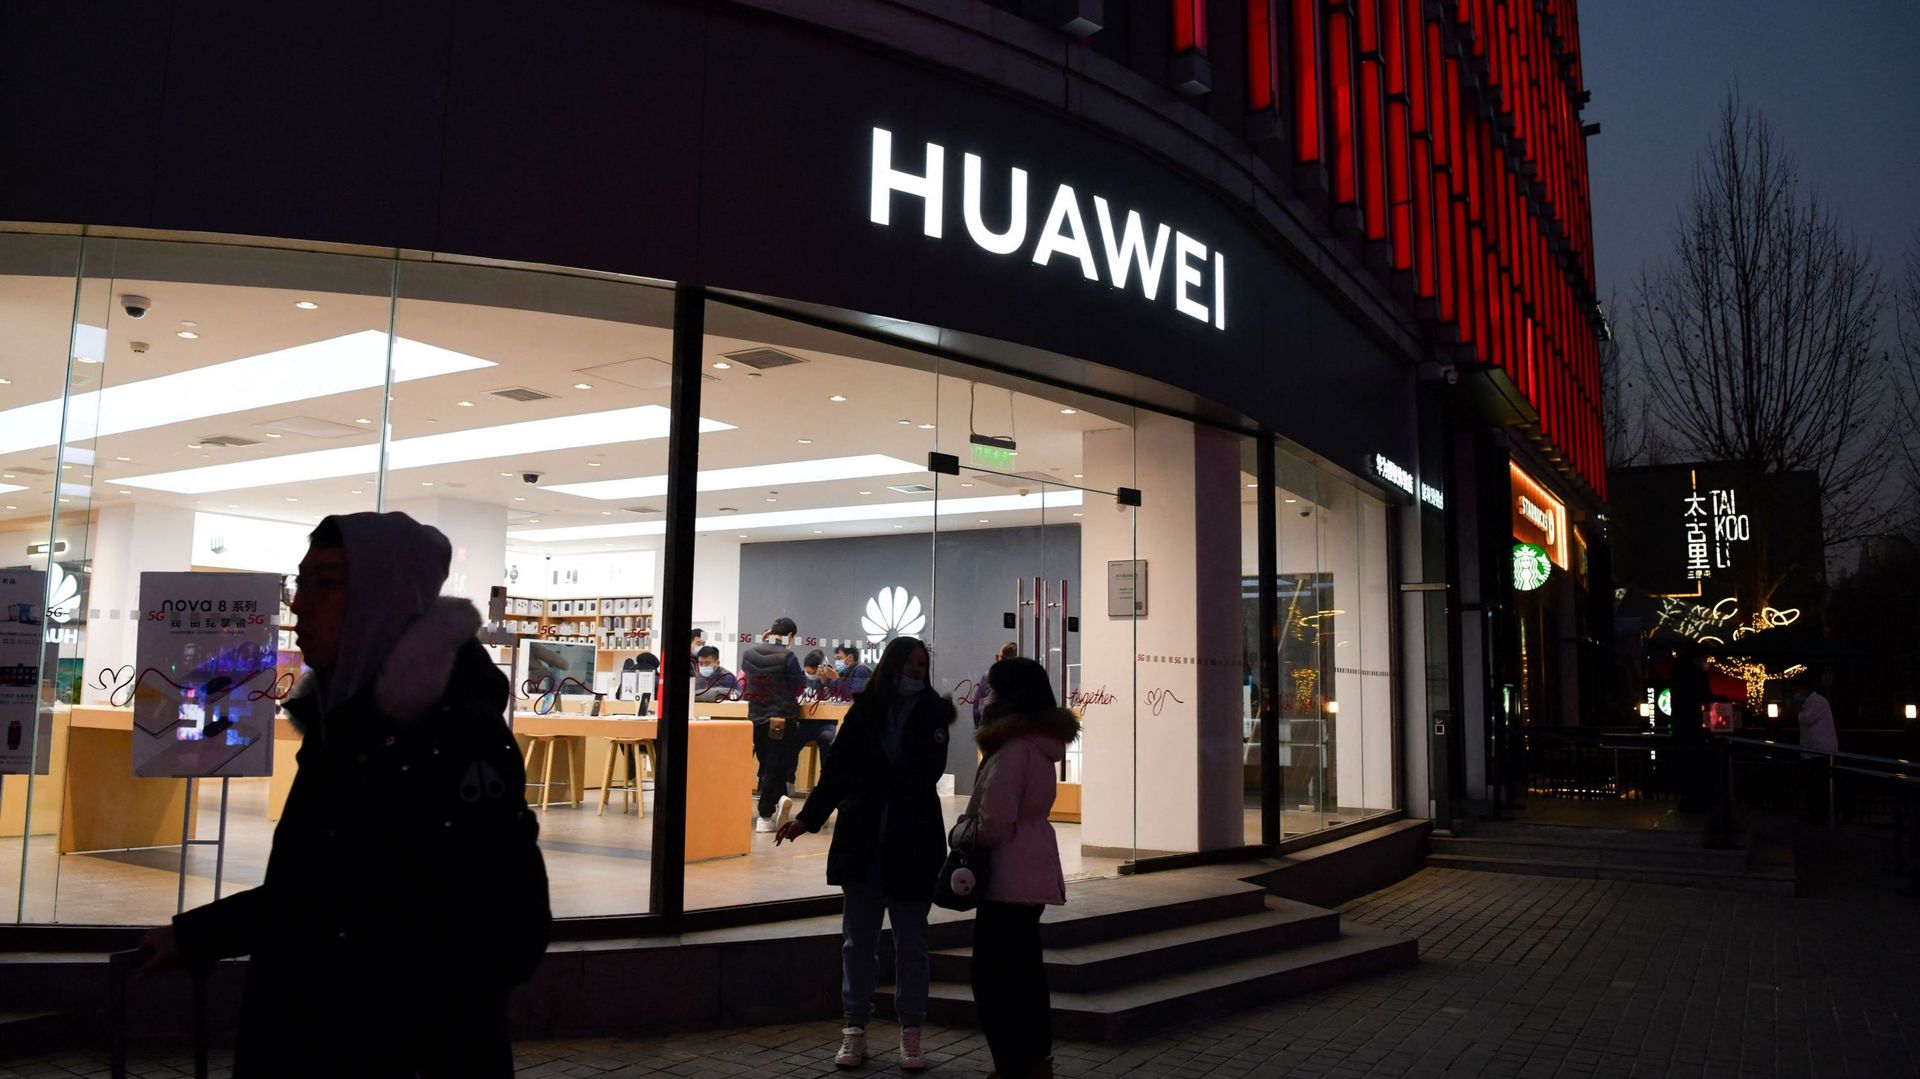 Le chiffre d'affaires de Huawei chute fortement en raison des sanctions américaines